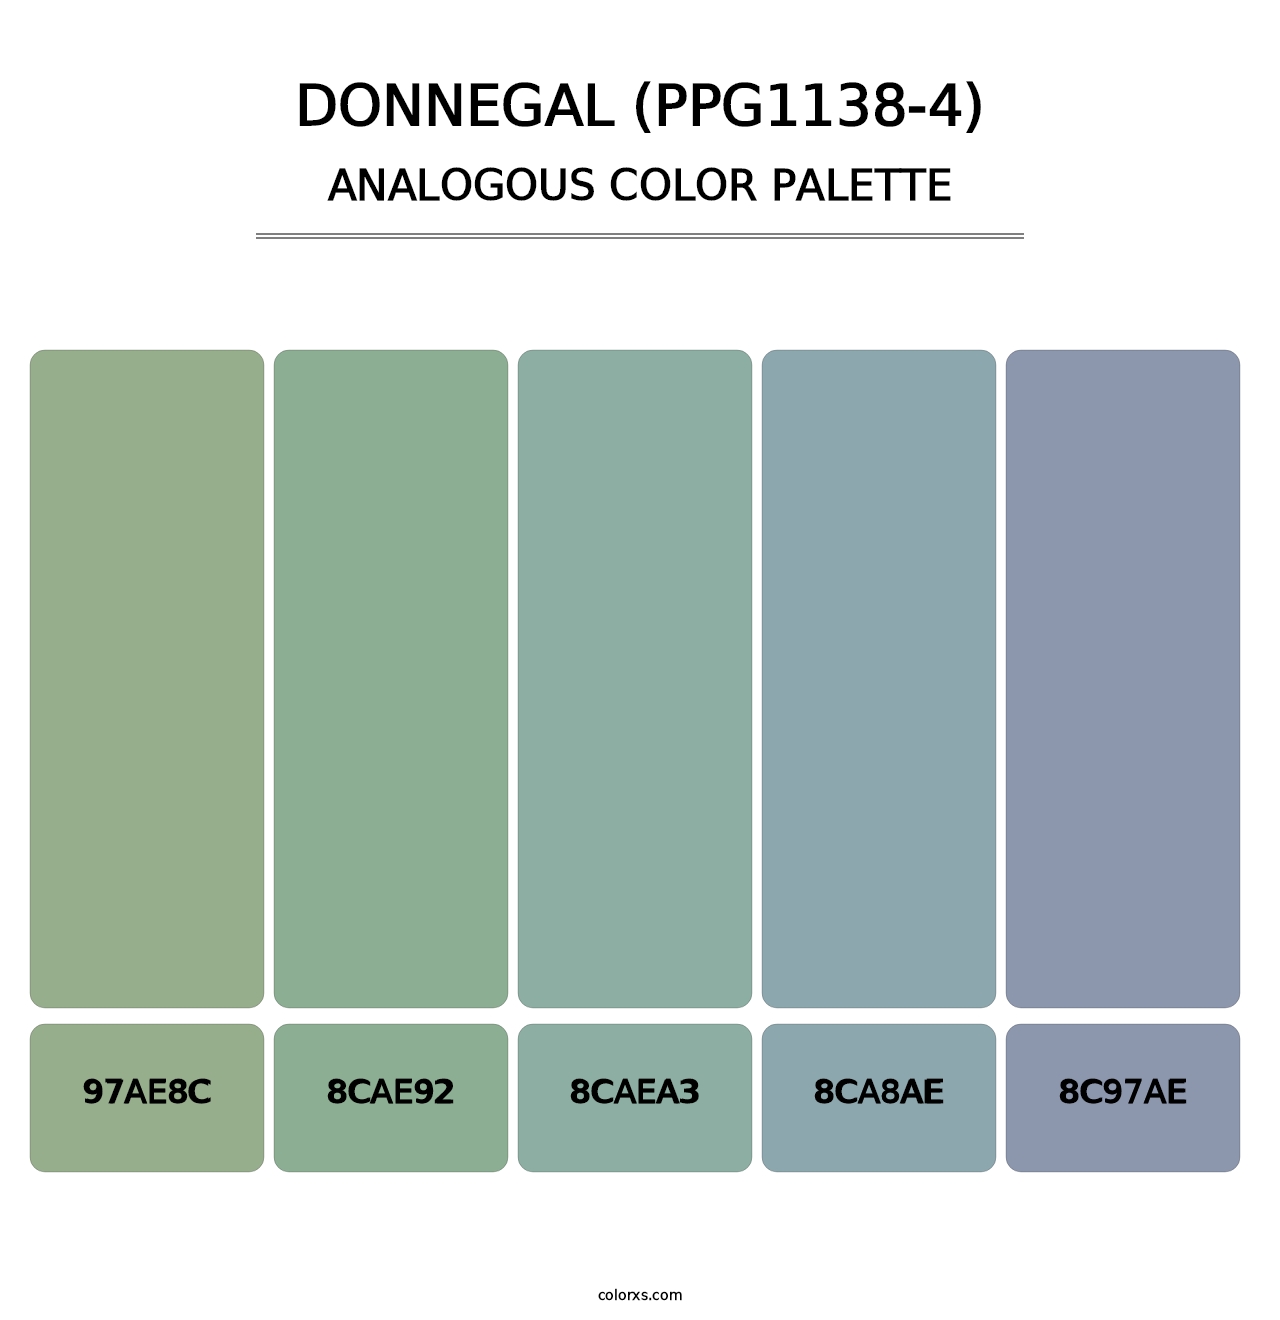 Donnegal (PPG1138-4) - Analogous Color Palette